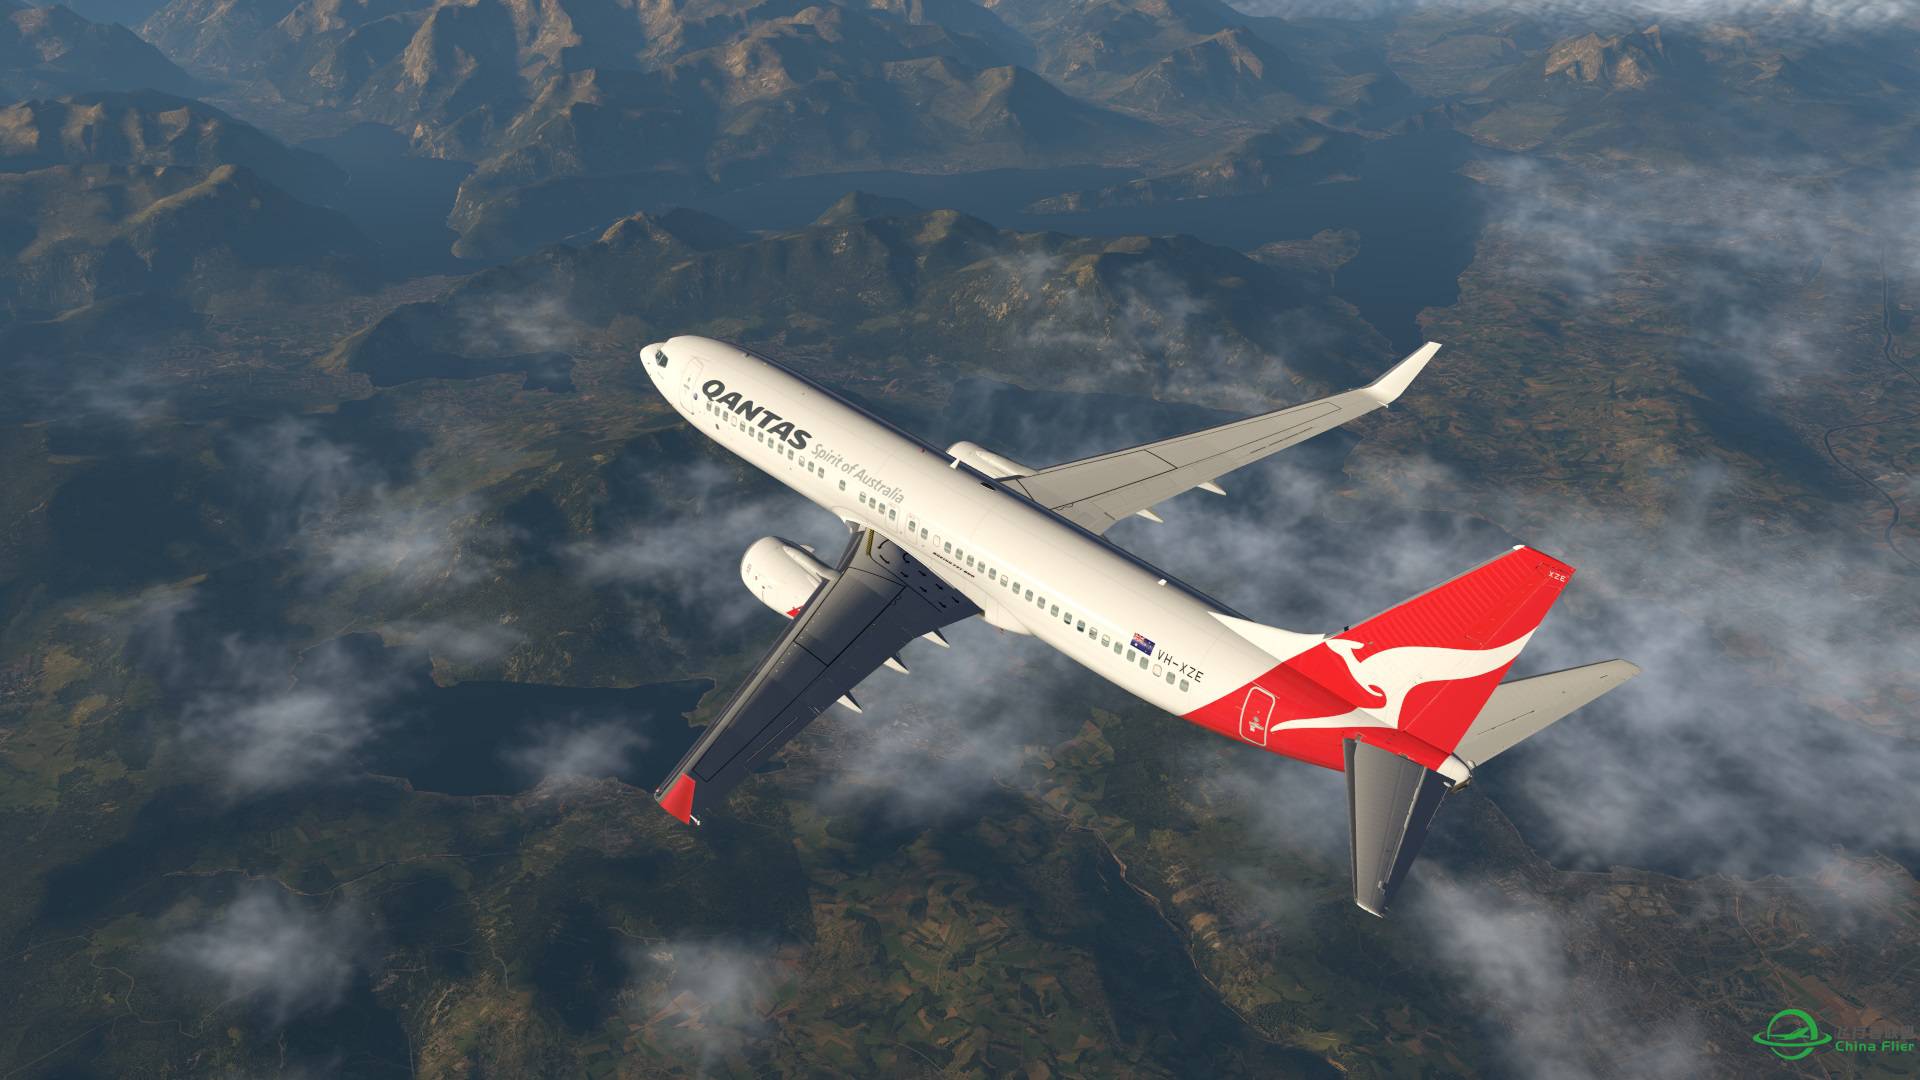 飞跃阿尔卑斯山 X-plane 11-5075 